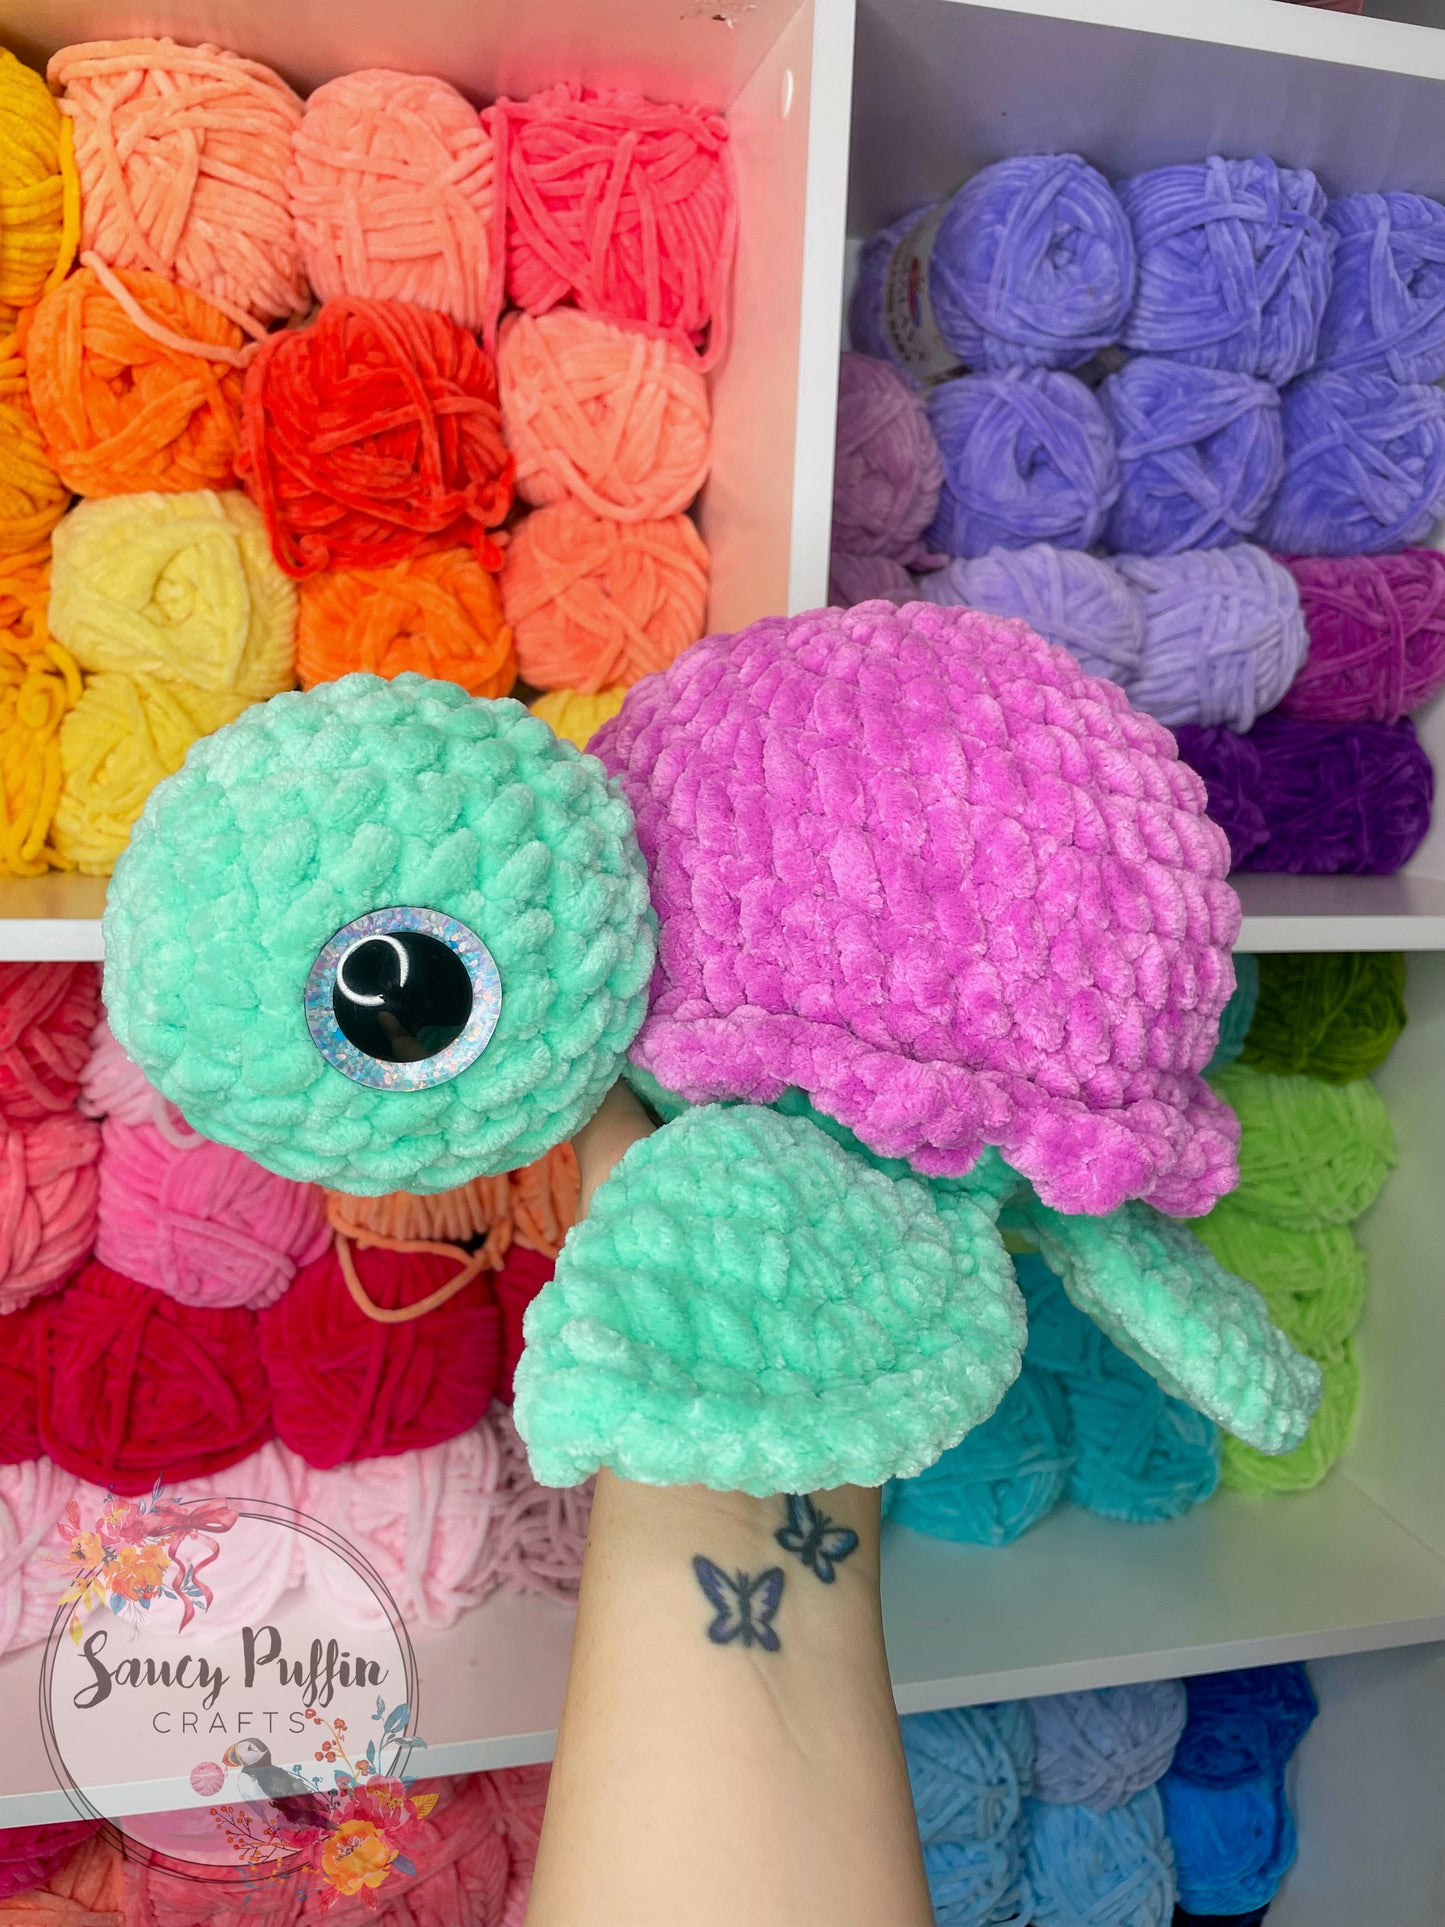 Twinkie the Turtle Crochet Pattern